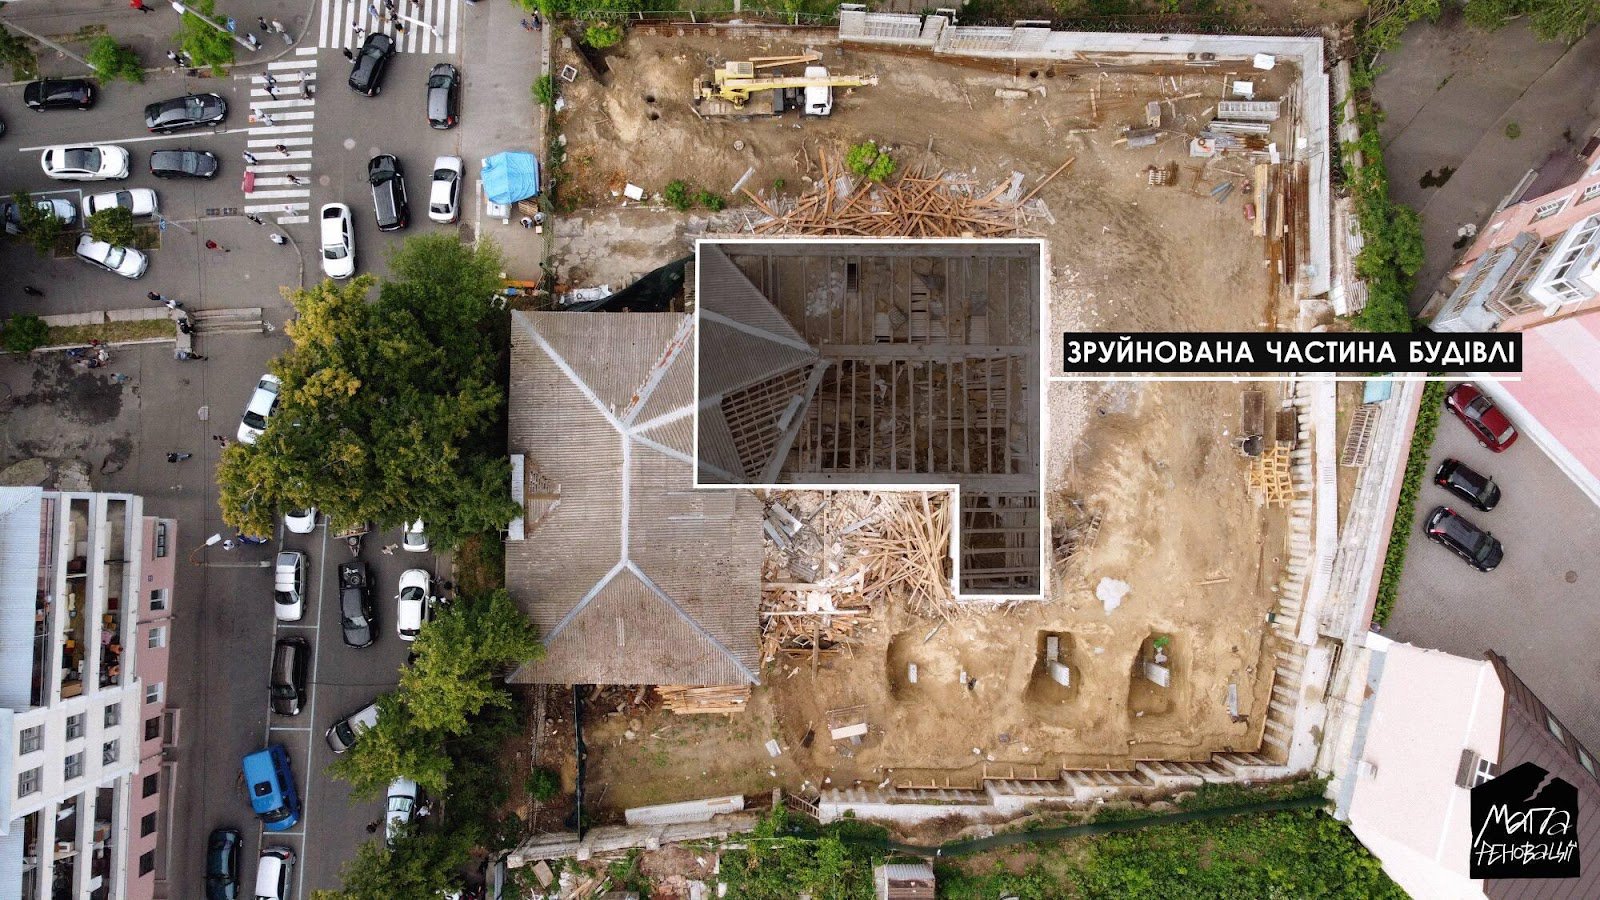 Садиба Барбана після часткового знищення у серпні 2021 року. Вид згори. Зображення: "Мапа реновації"